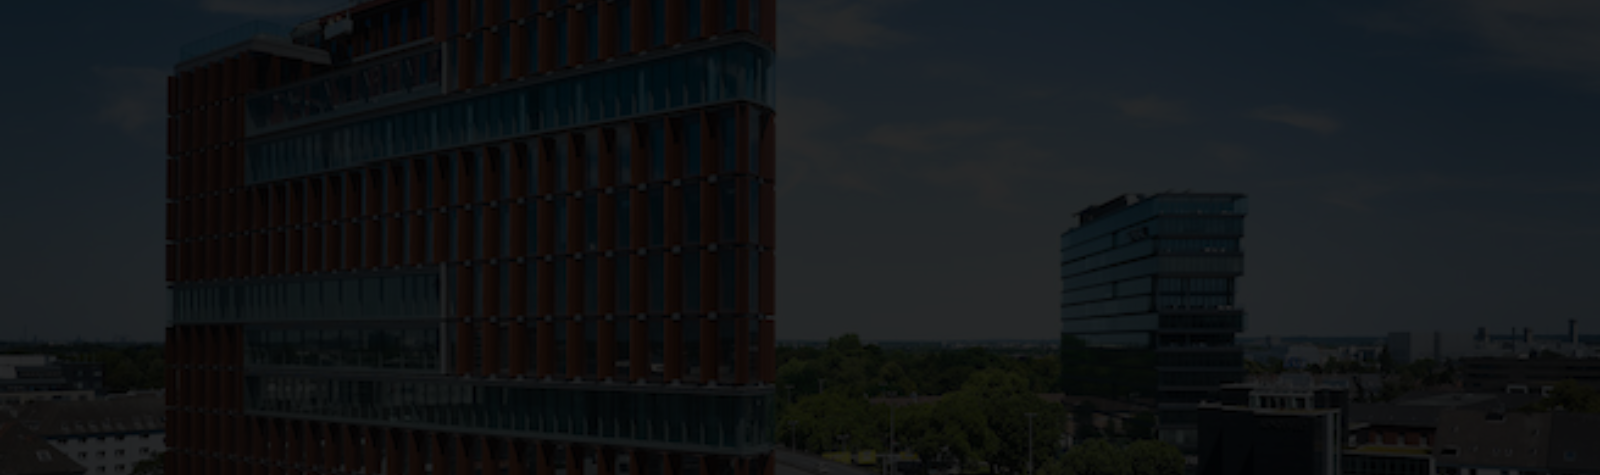 Union Investment acquiert une tour de bureaux haut de gamme à Düsseldorf